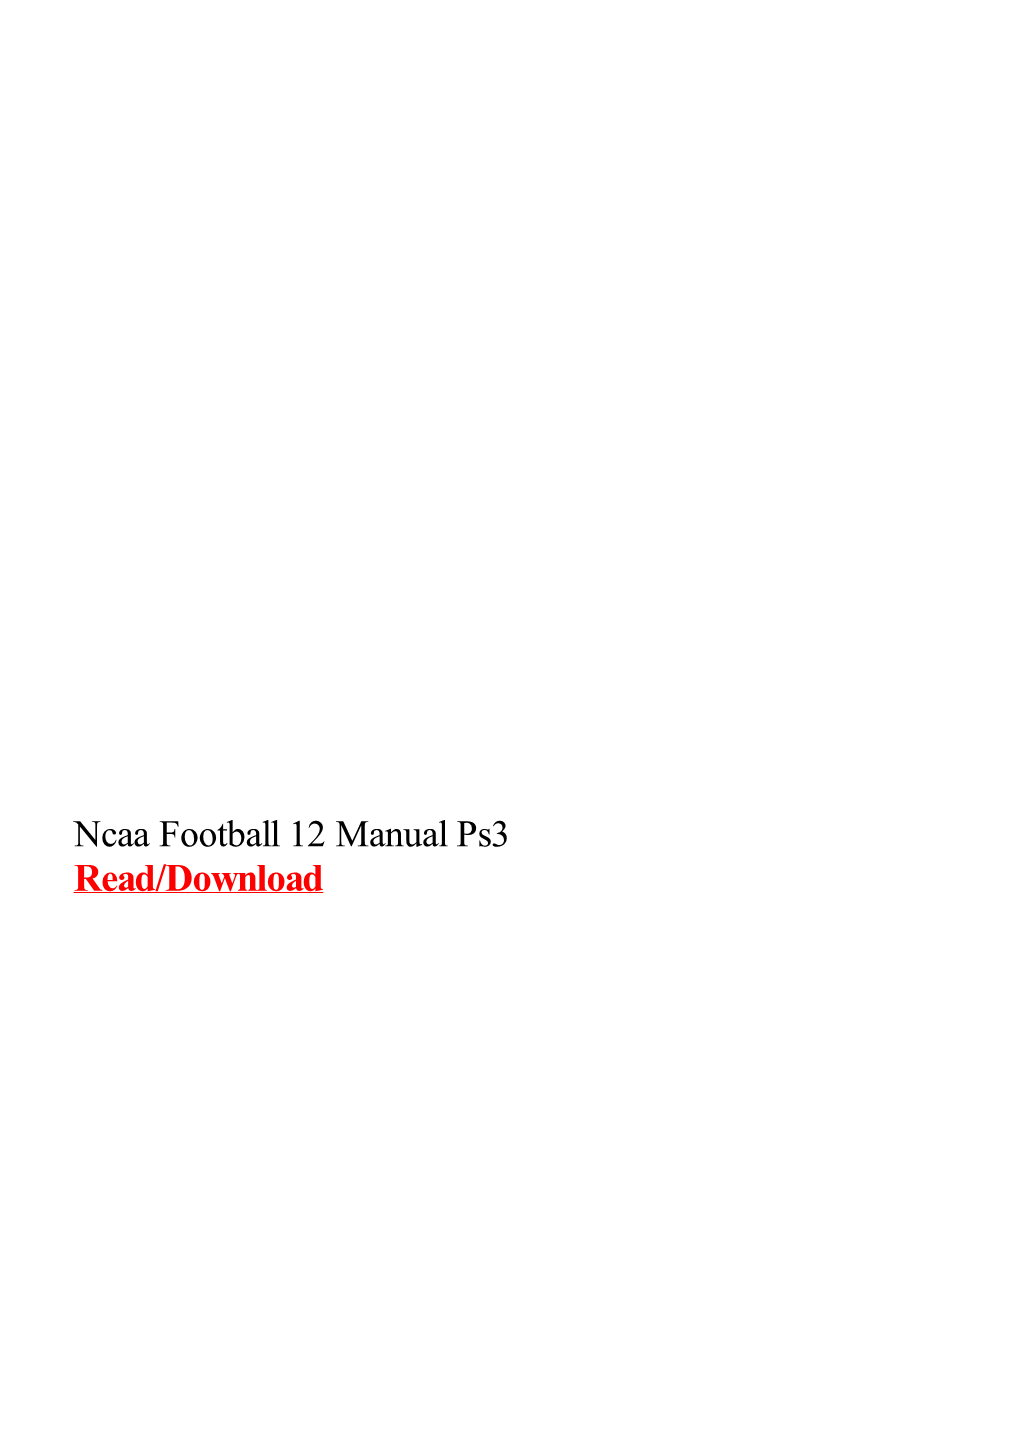 Ncaa Football 12 Manual Ps3